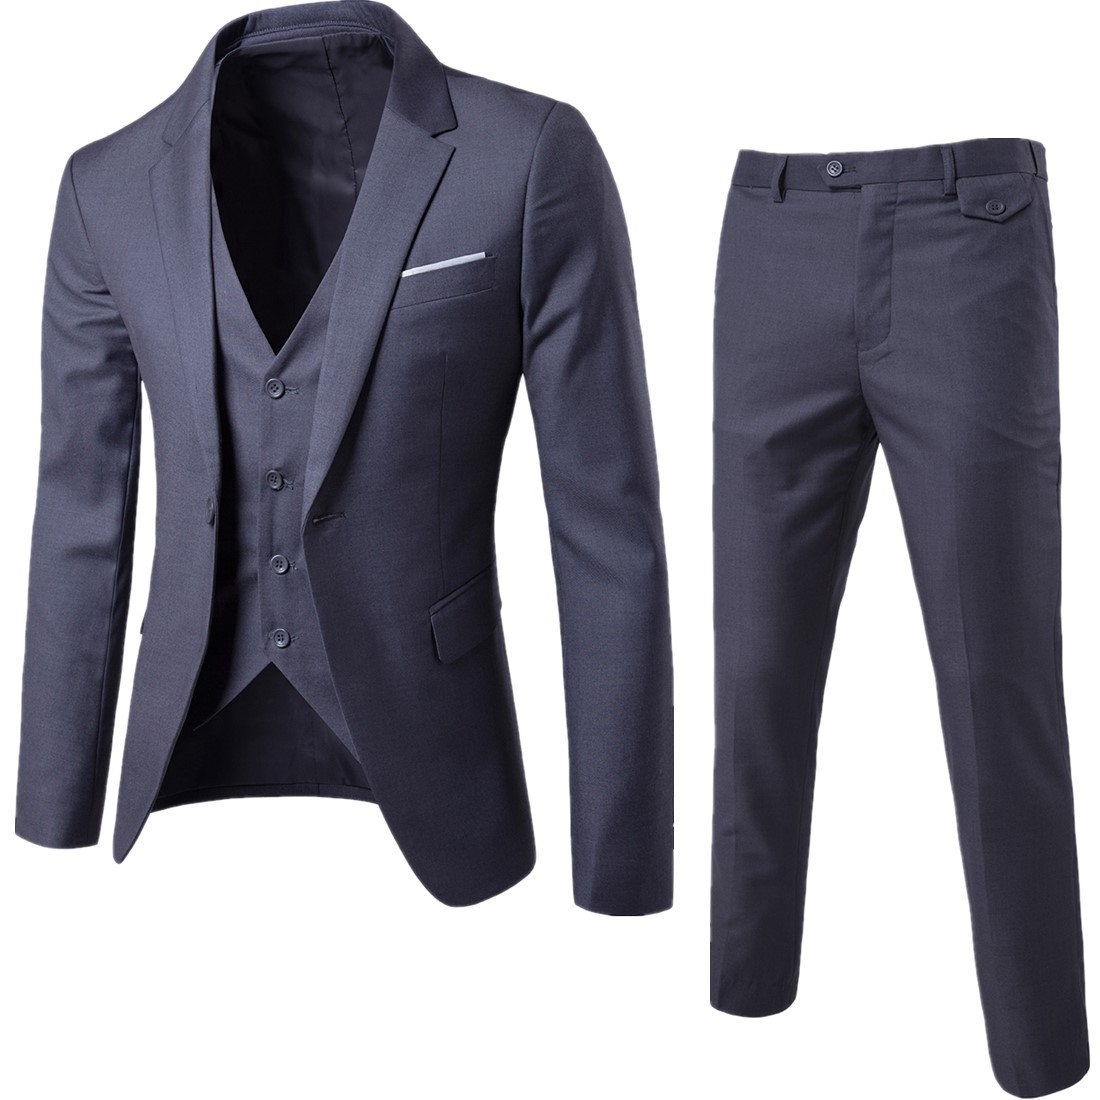 Winter wholesale suit suit men's slim business suit business suit business suit work suit wedding three piece set